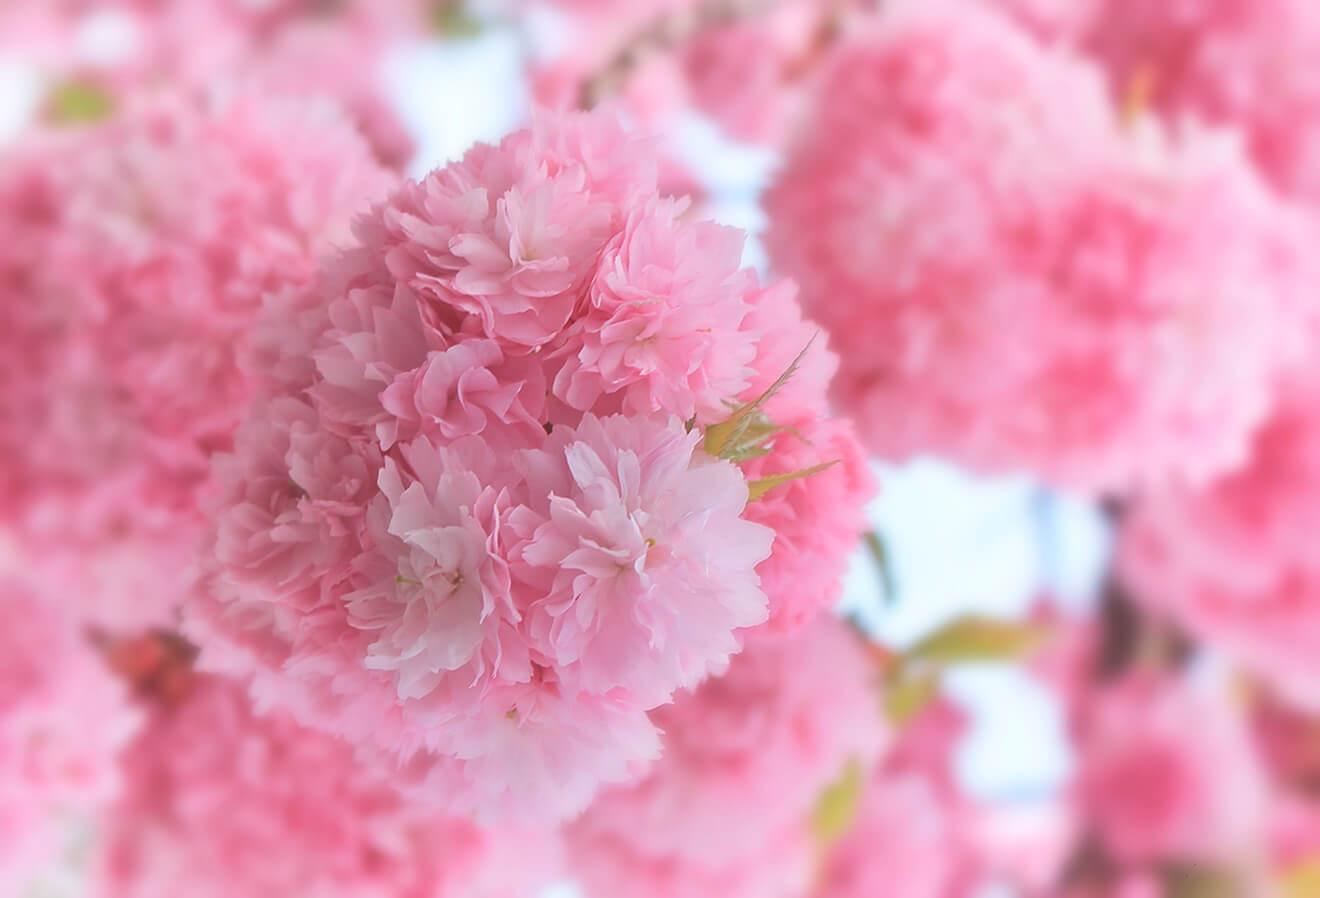 Lush pink bloom